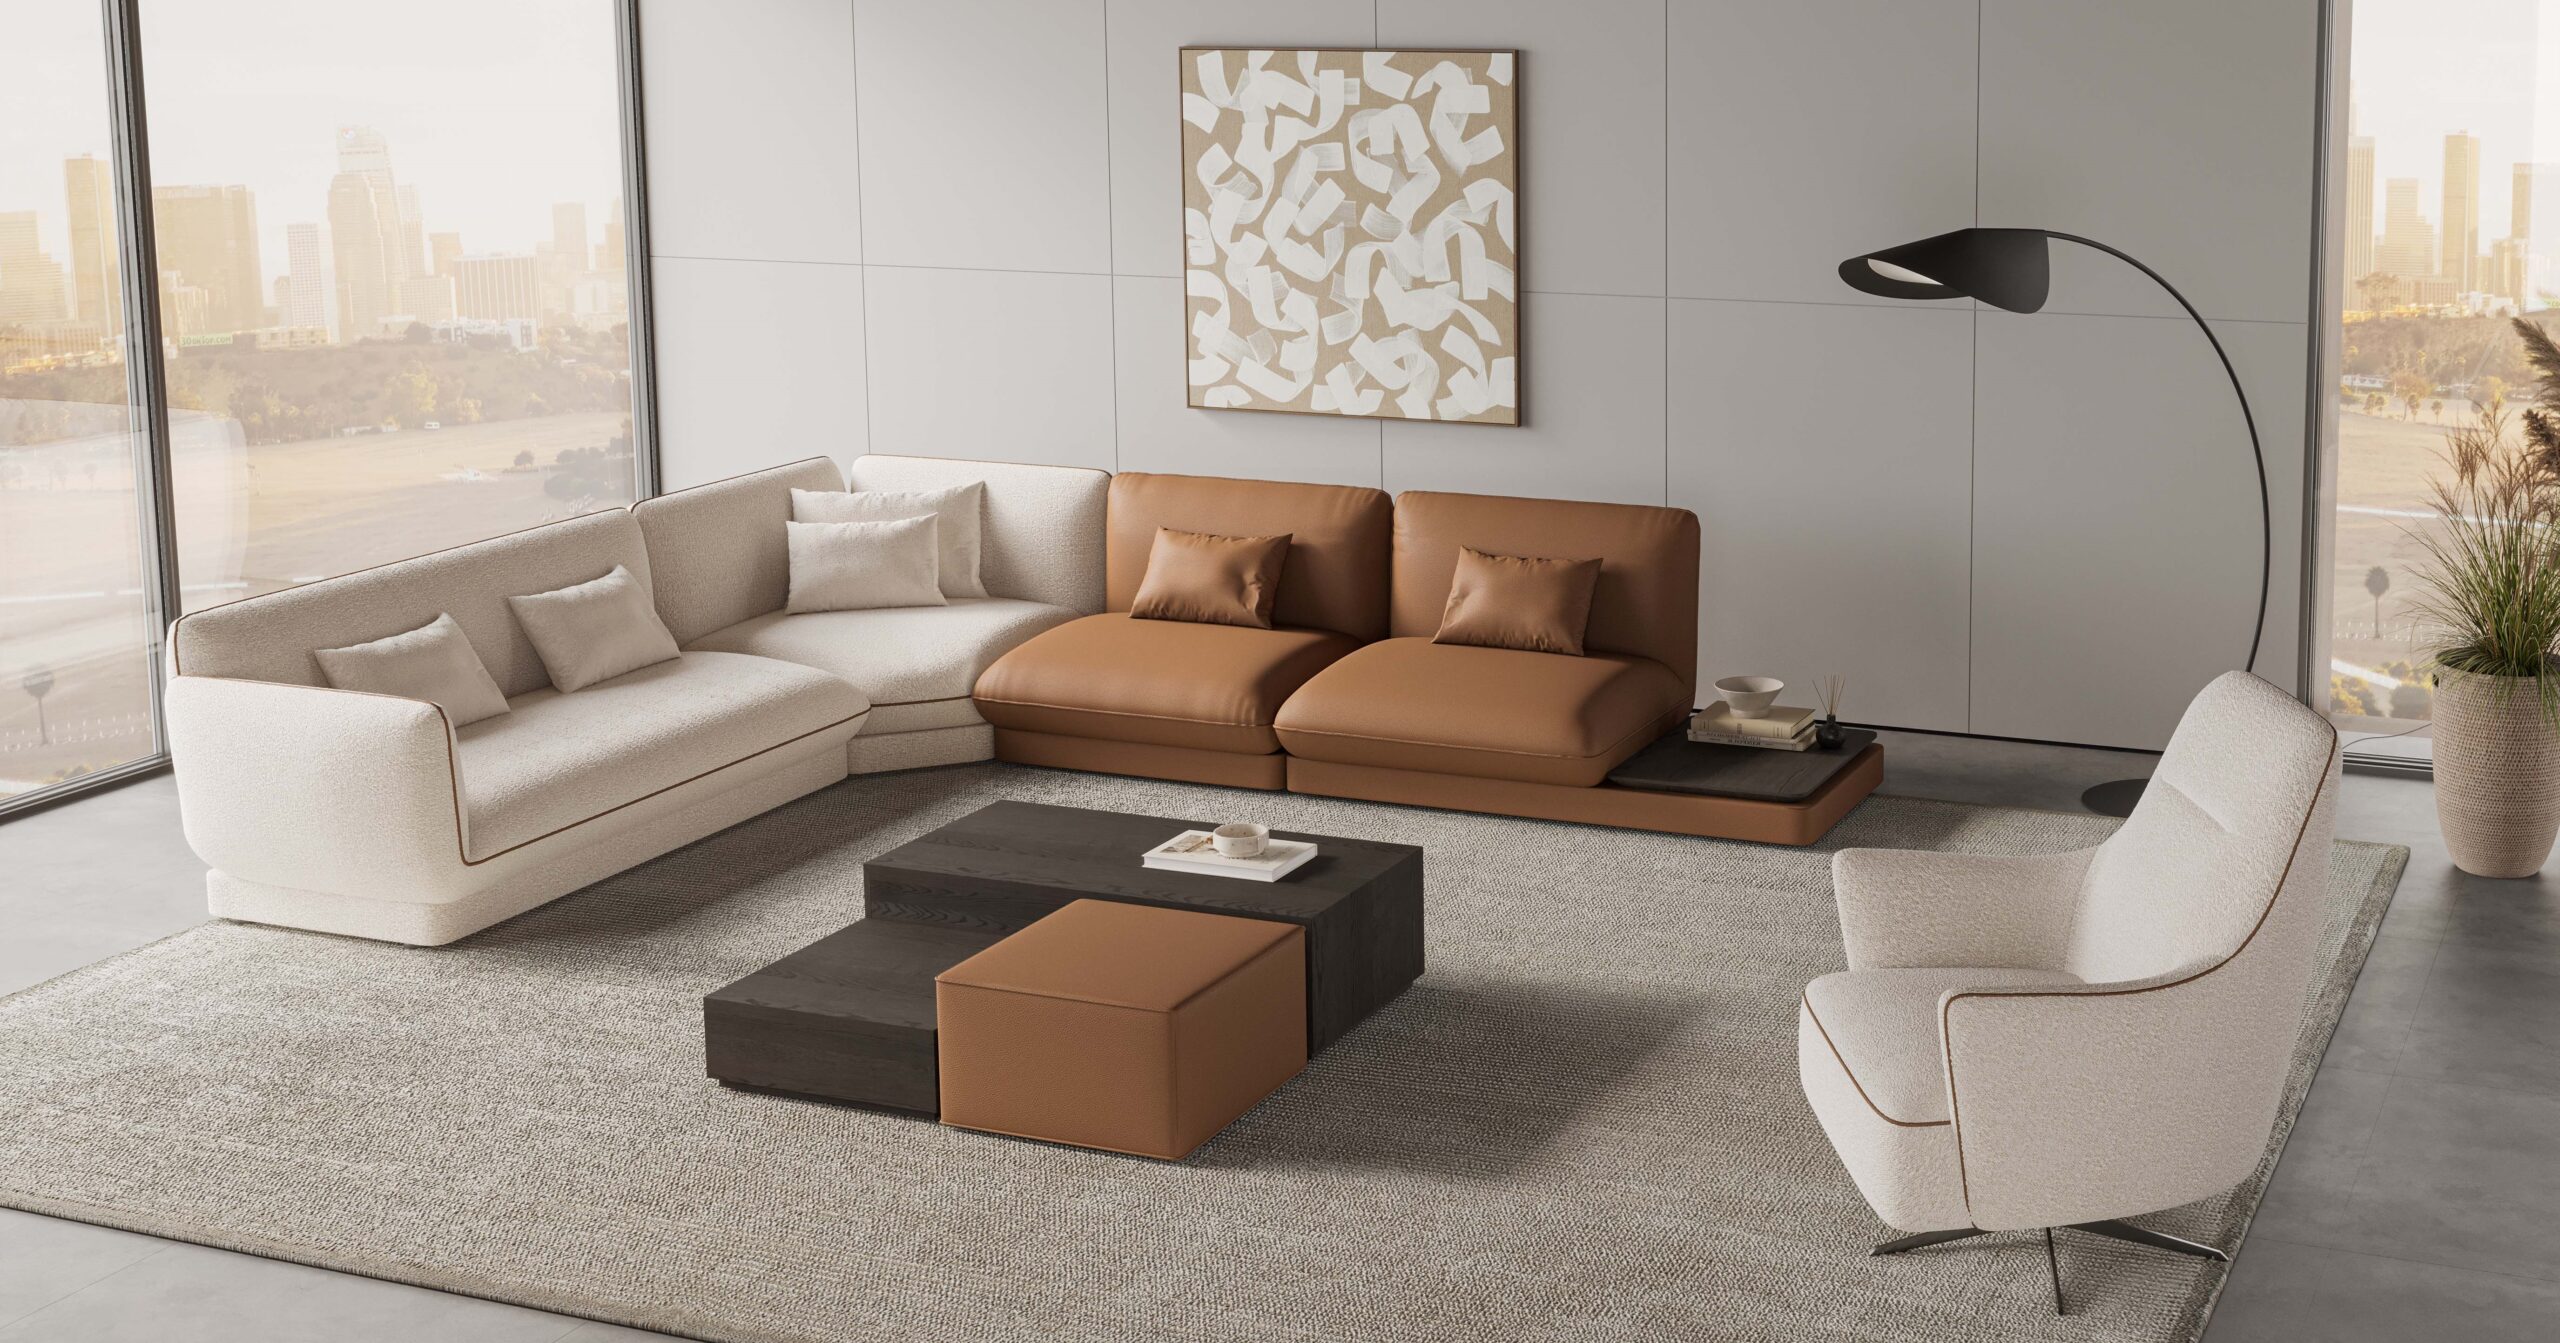 hoeksalon-design sofa-design zetels op maat-interieurwinkel-zitbanken-lounge sofa